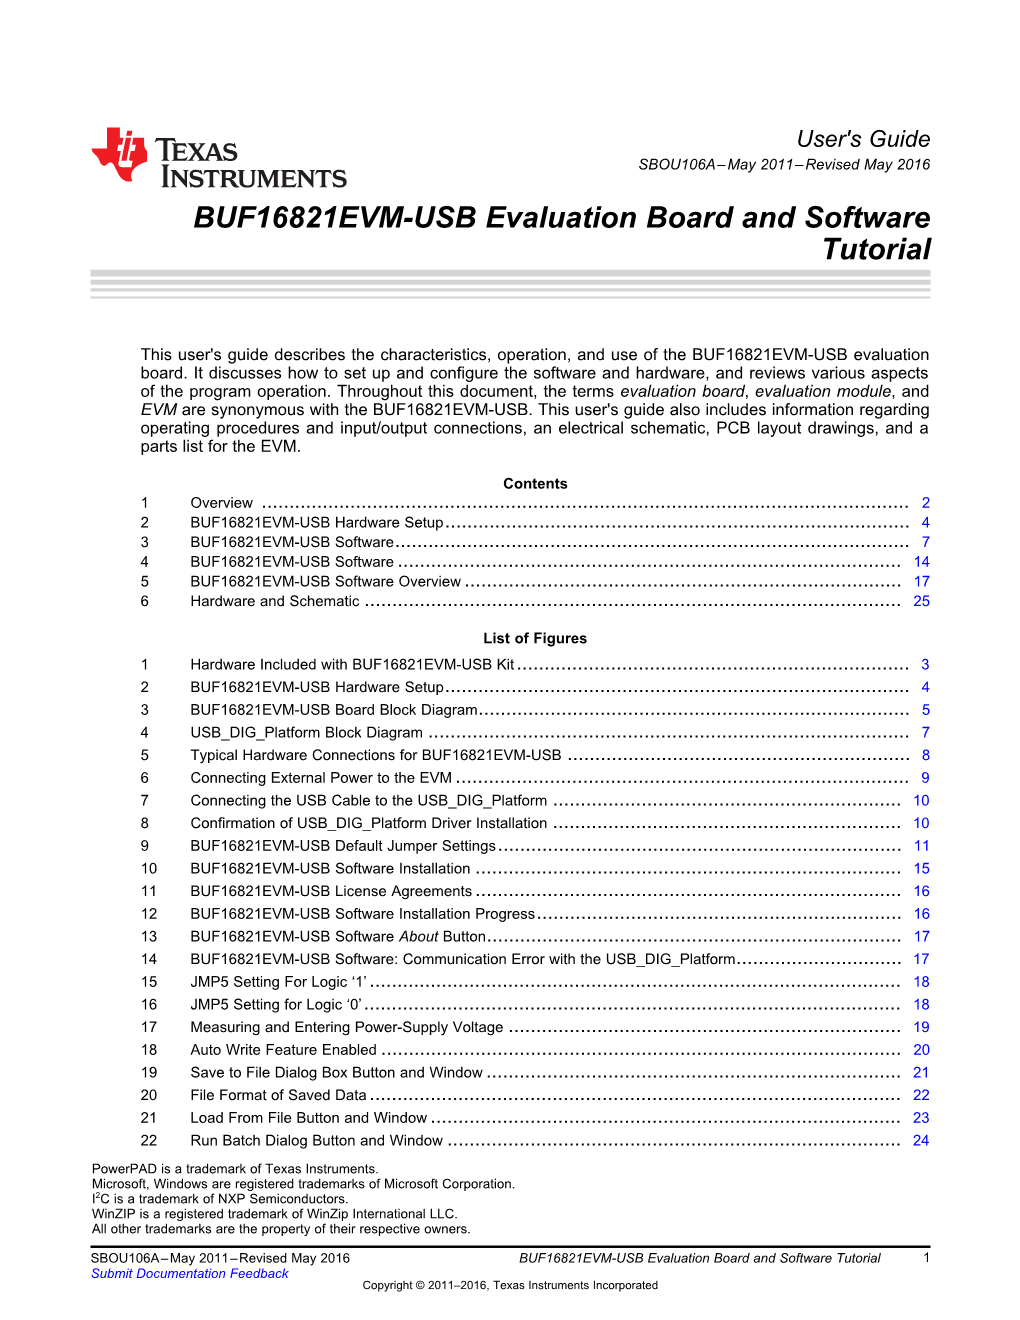 BUF16821EVM-USB User Guide (Rev. A)